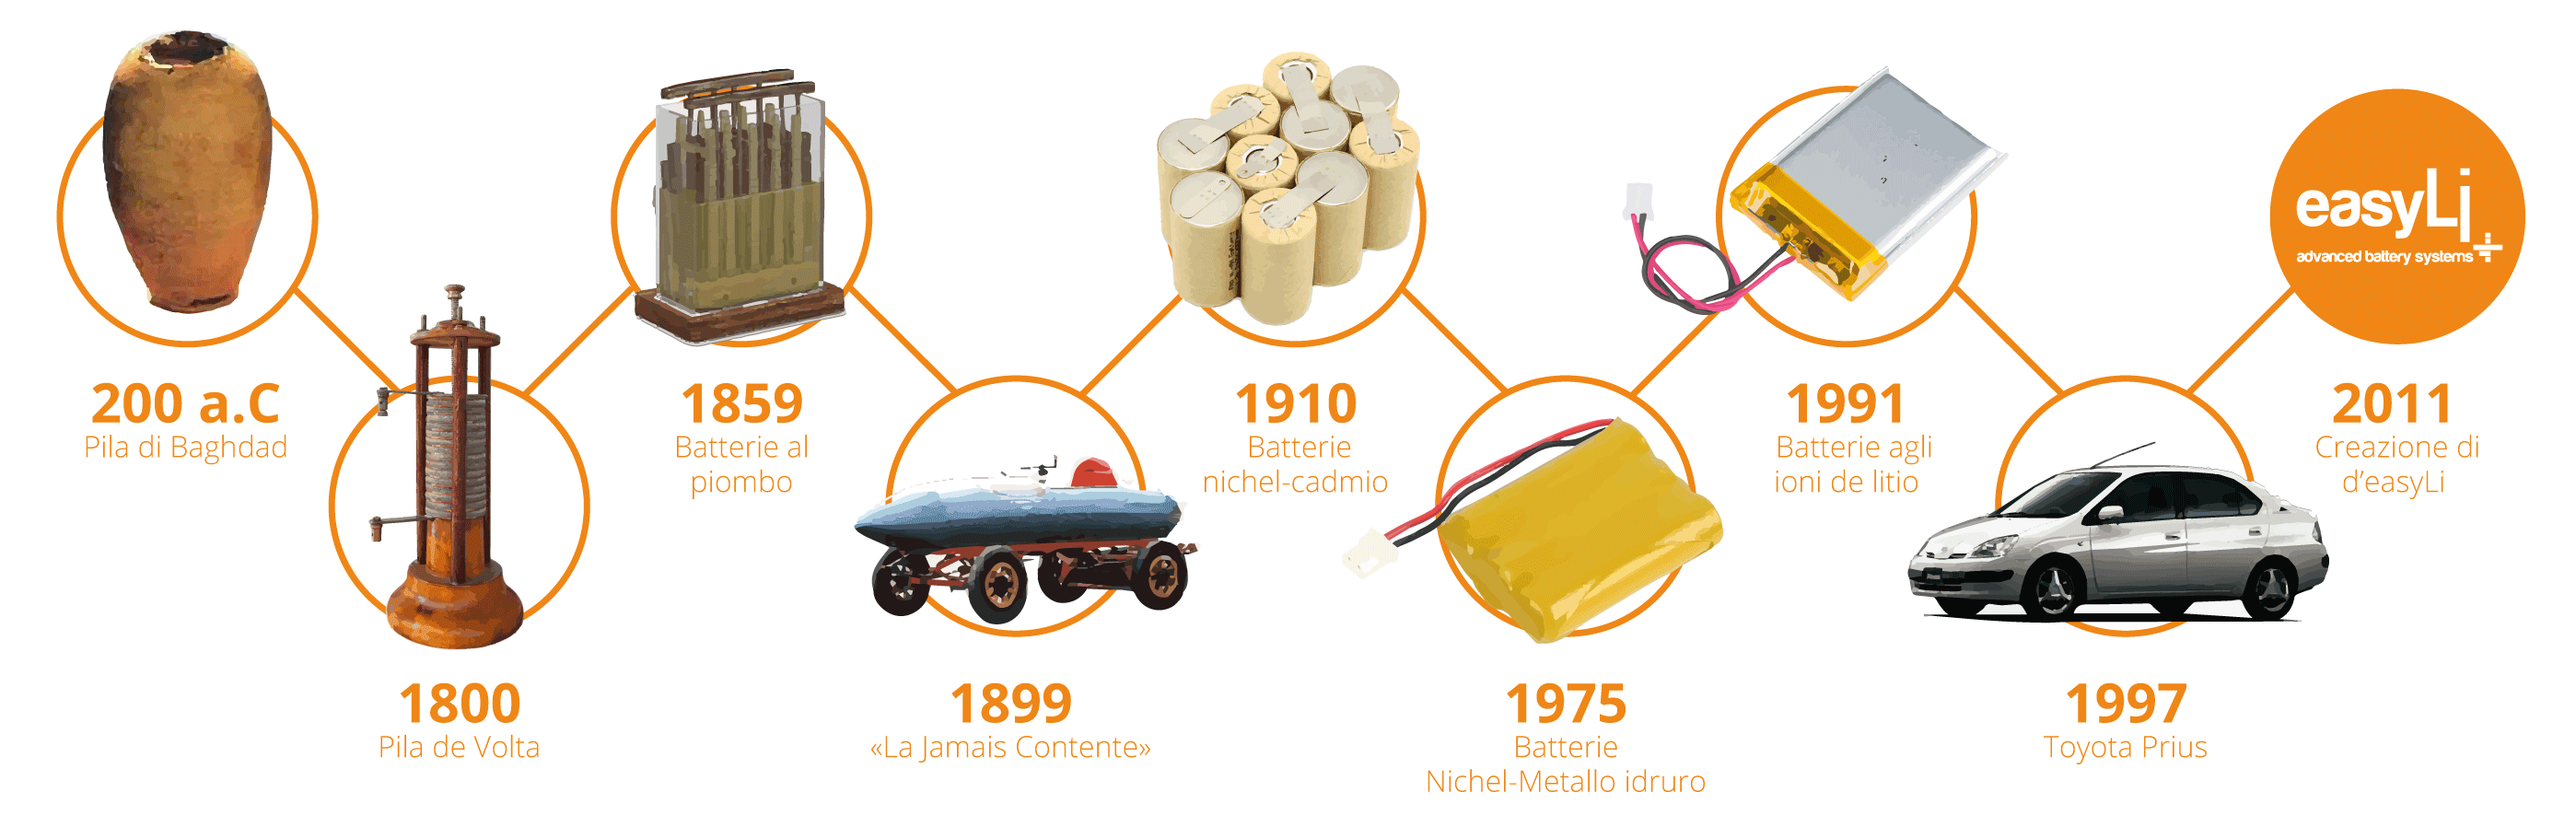 cronologia dell'evoluzione dell'utilizzo delle batterie